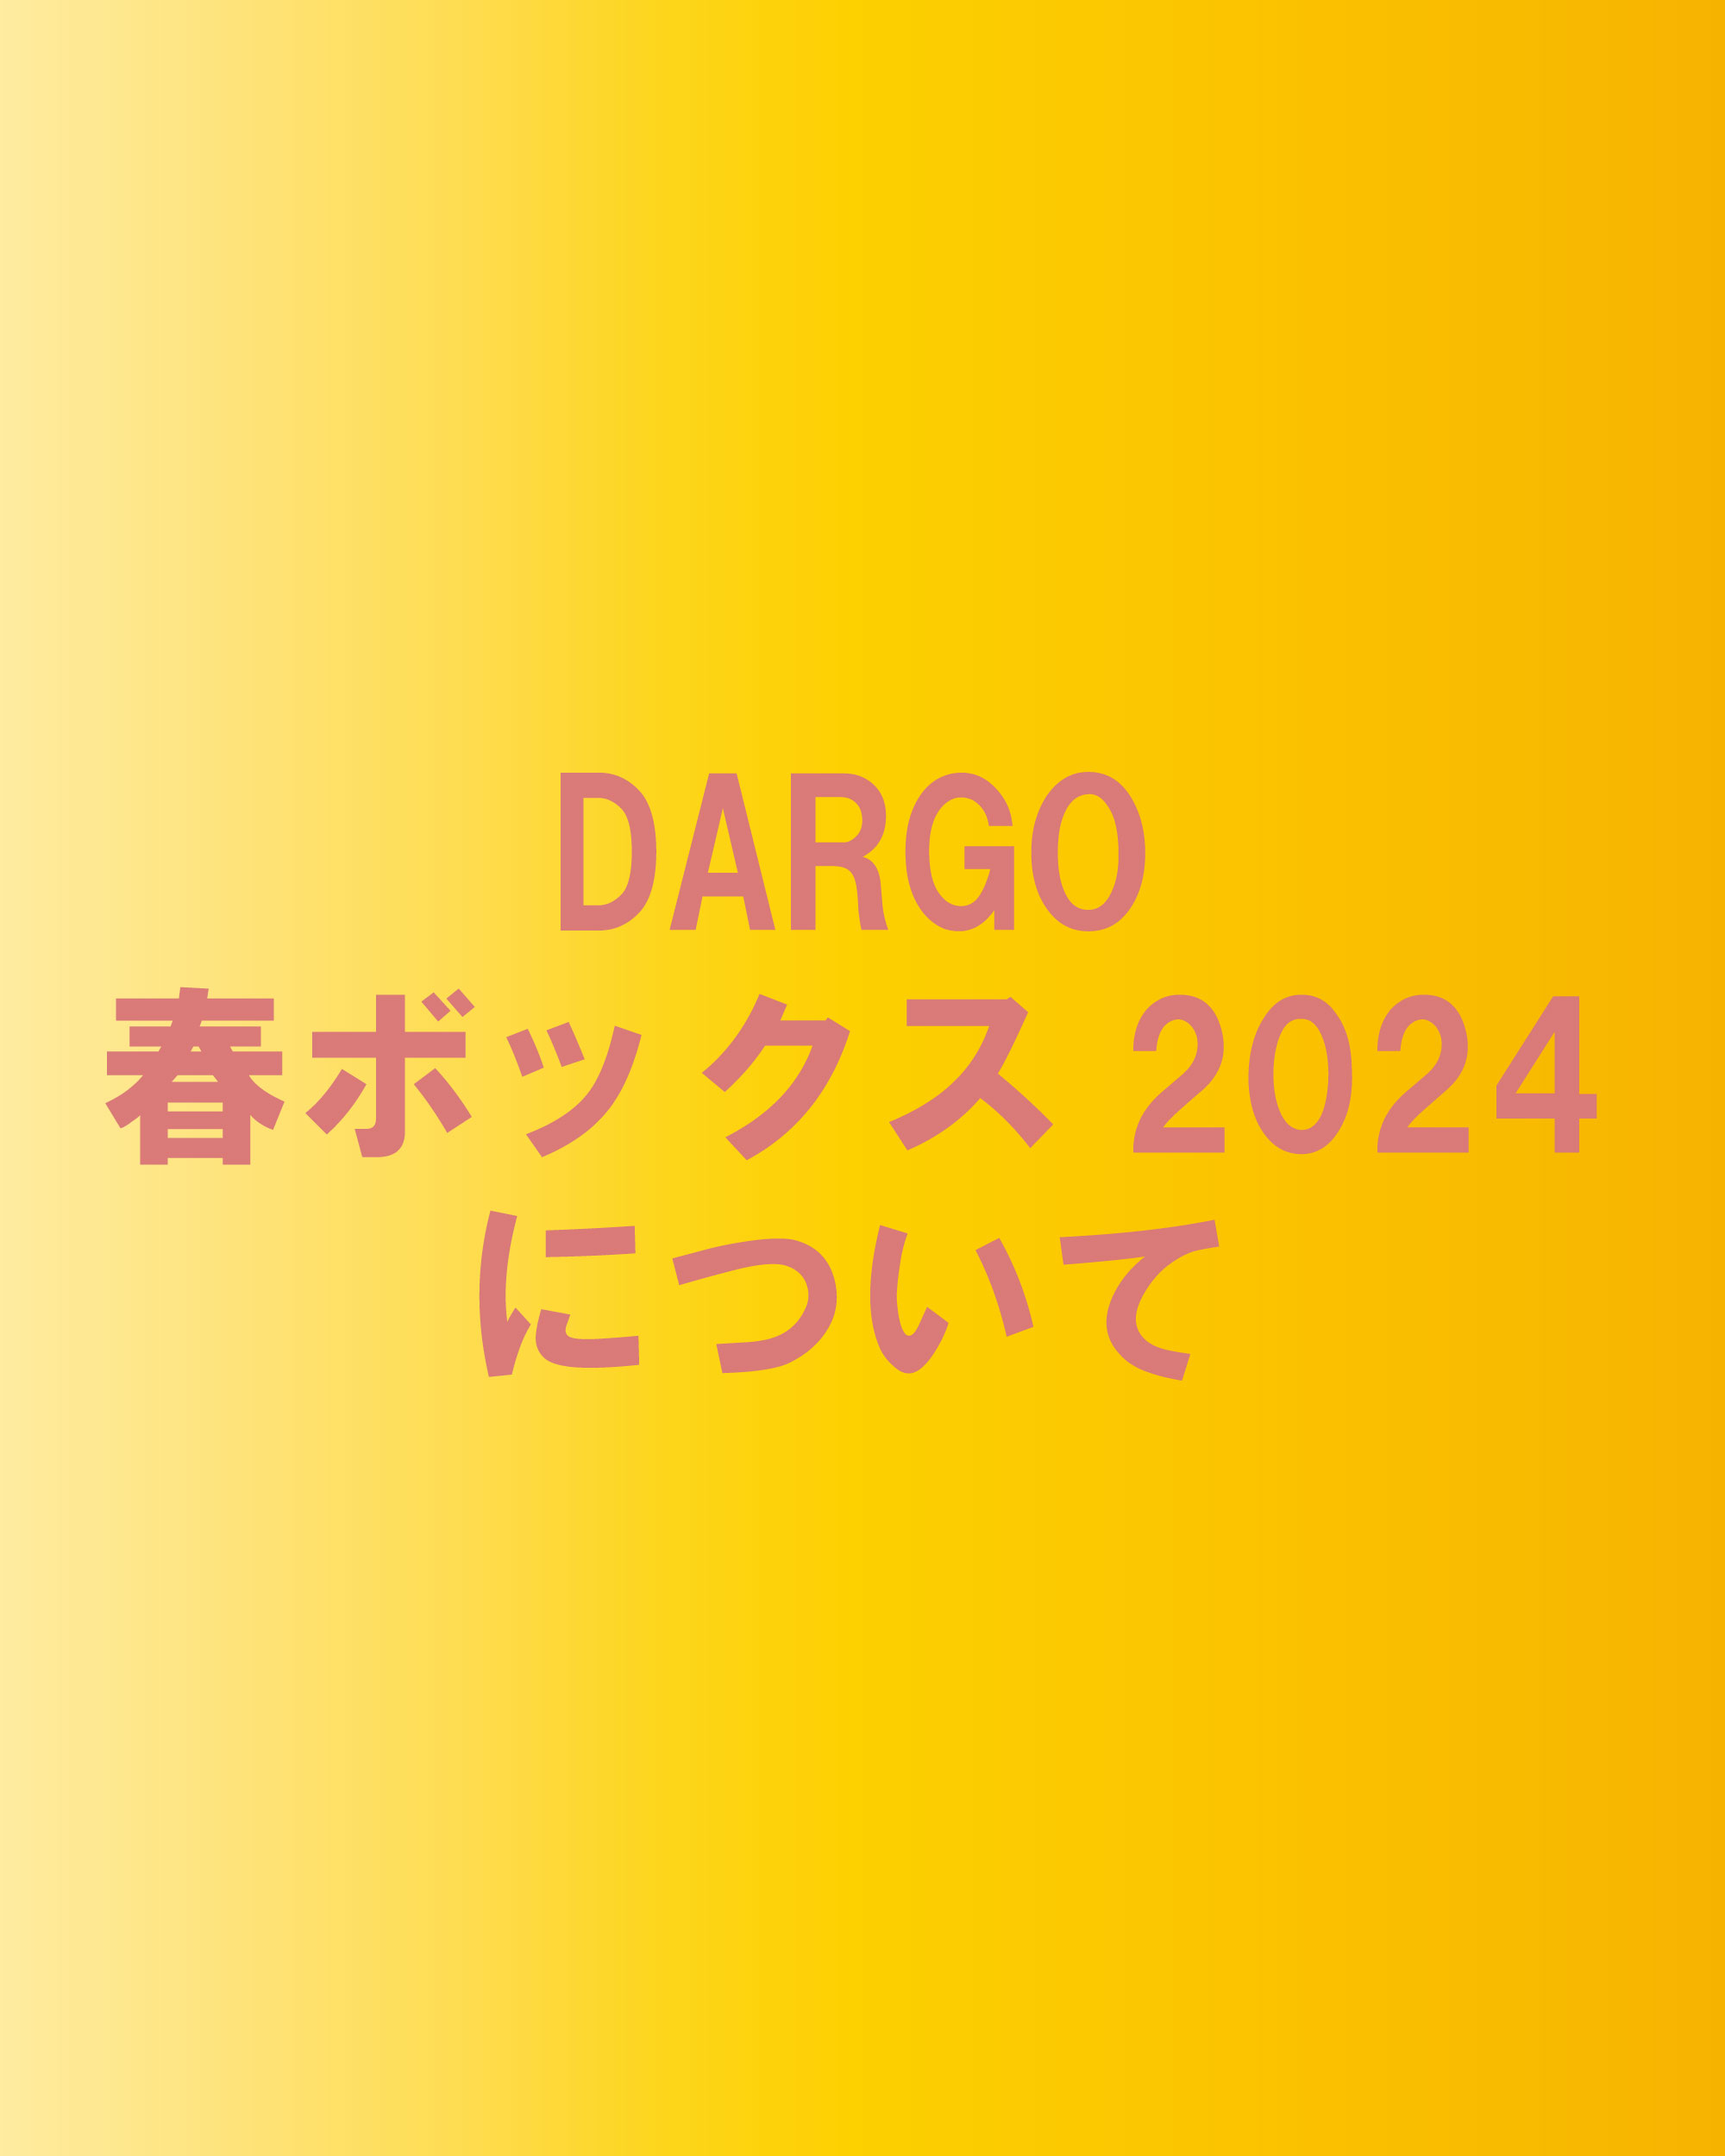 【DARGO春ボックス2024について】